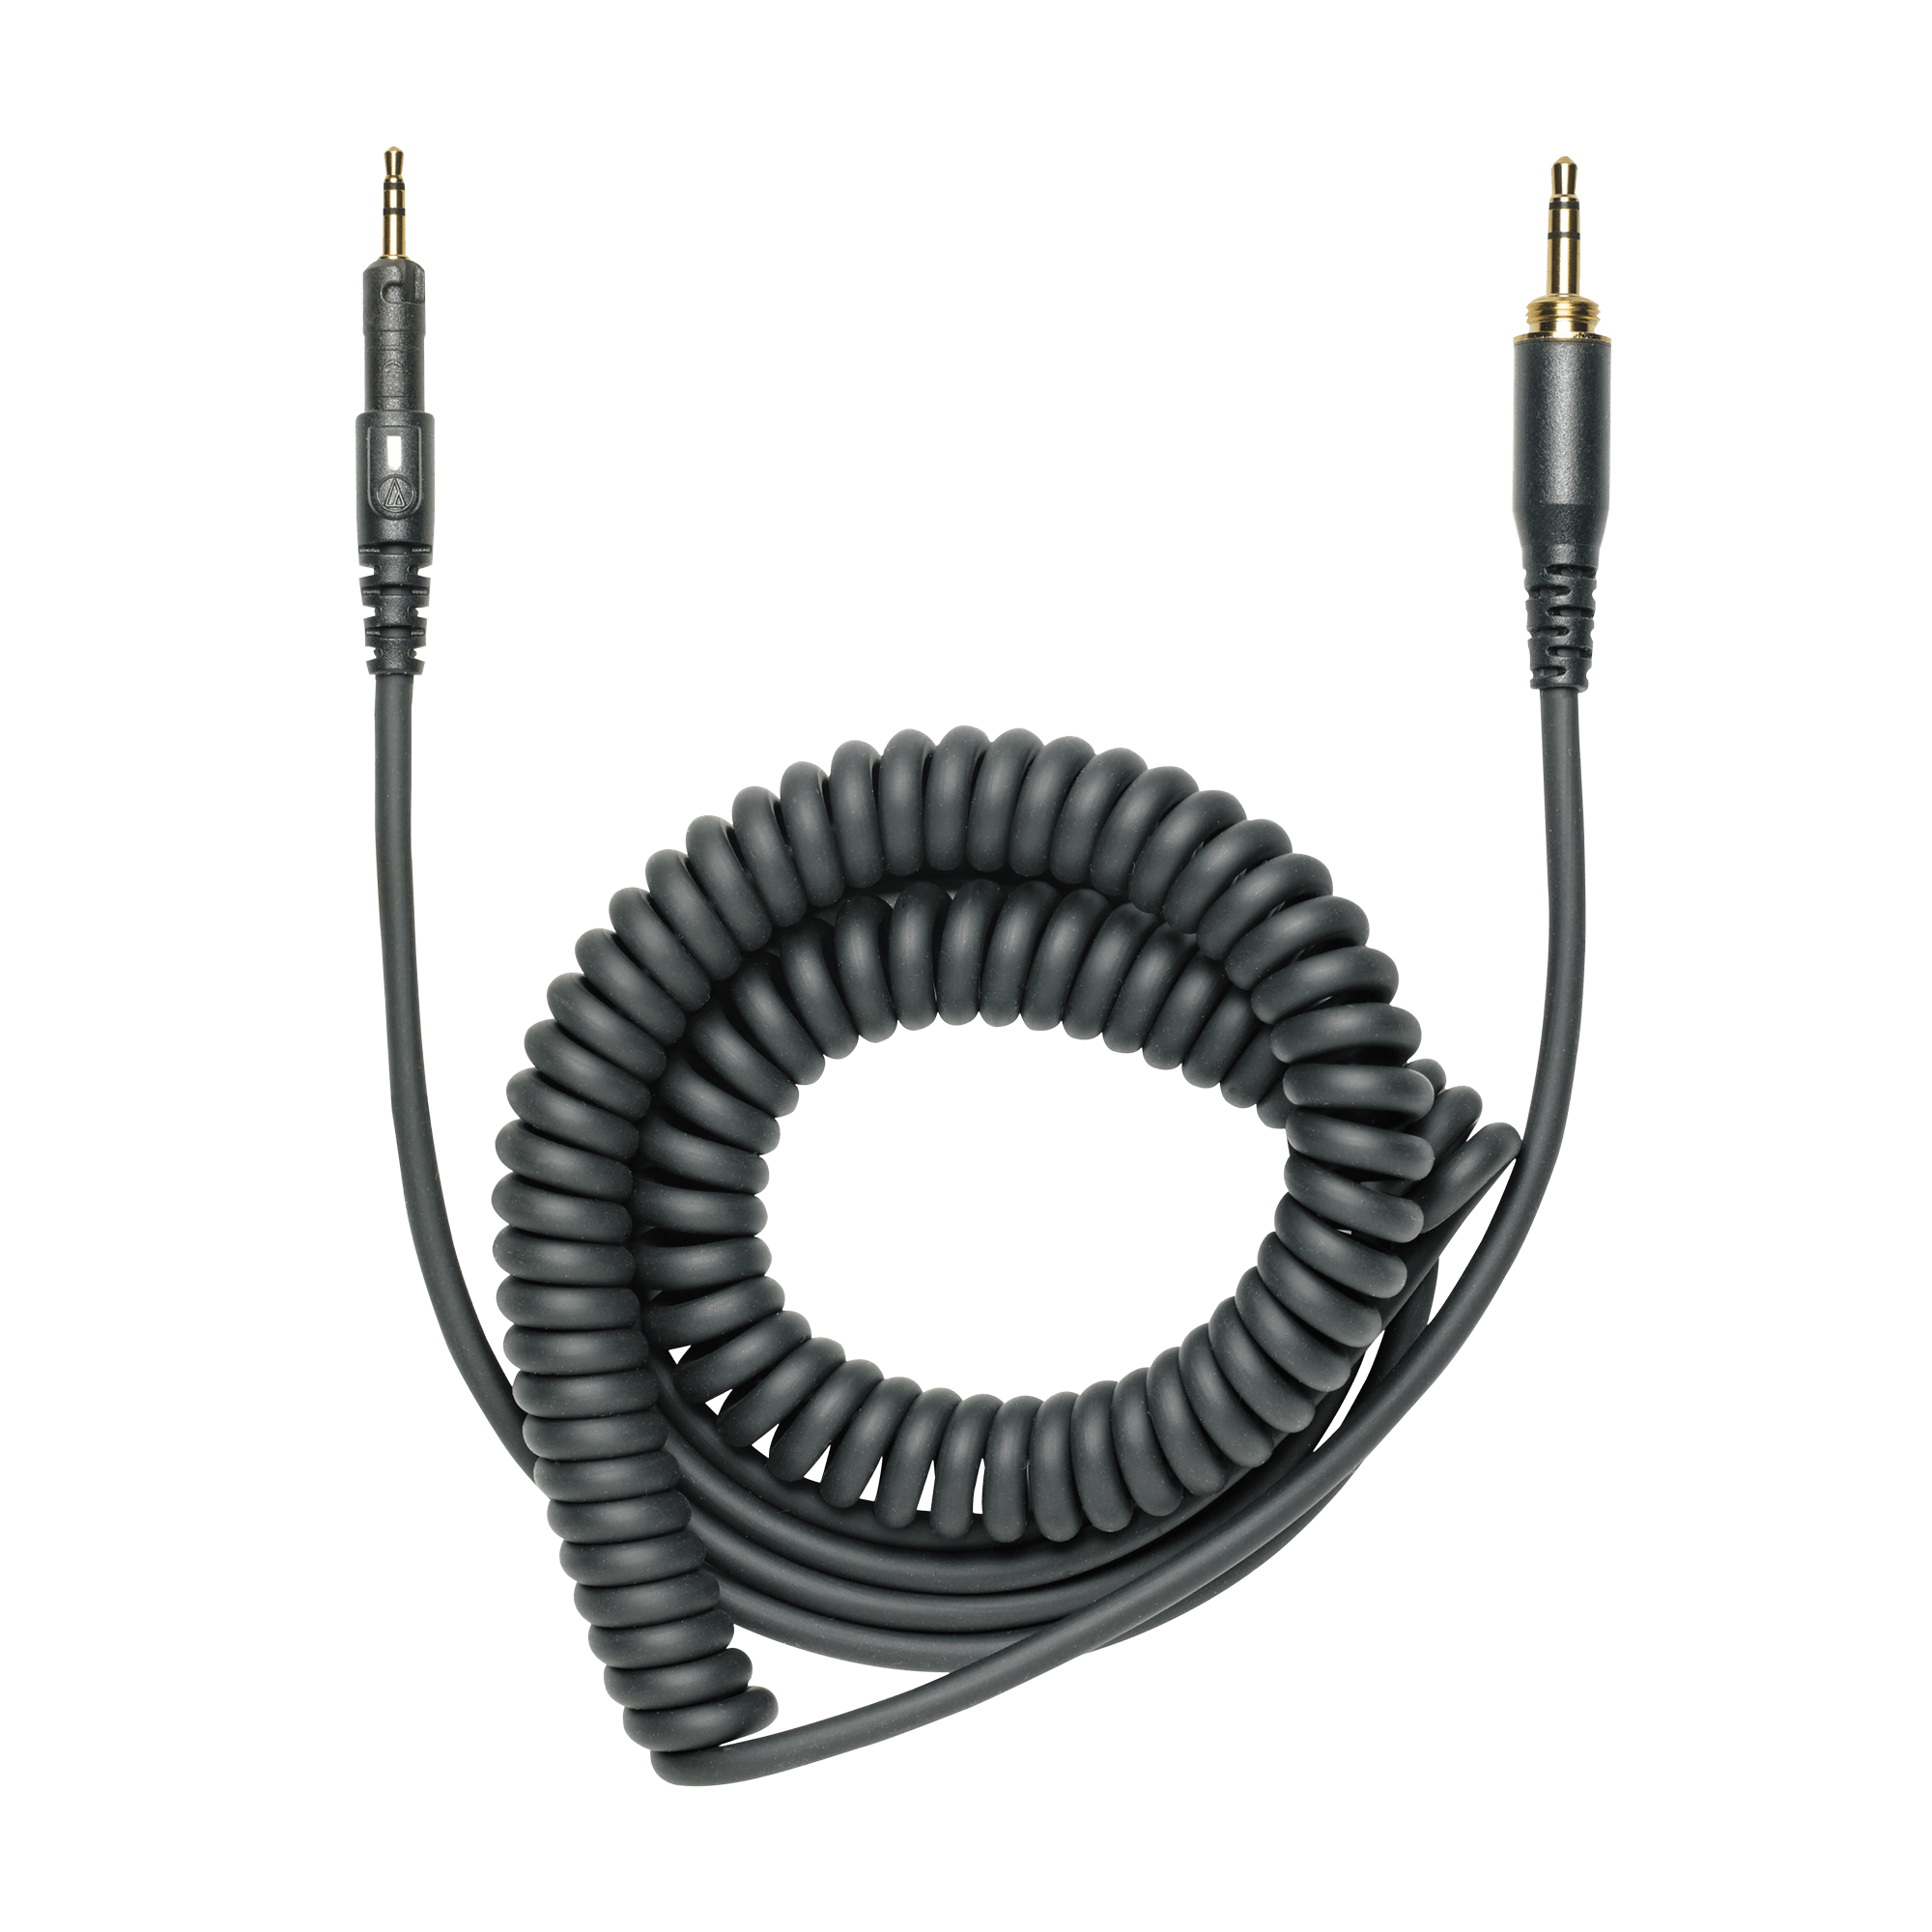 Audio-Technica ATH-M50X, los auriculares wireless con el asistente Alexa -  Meristation